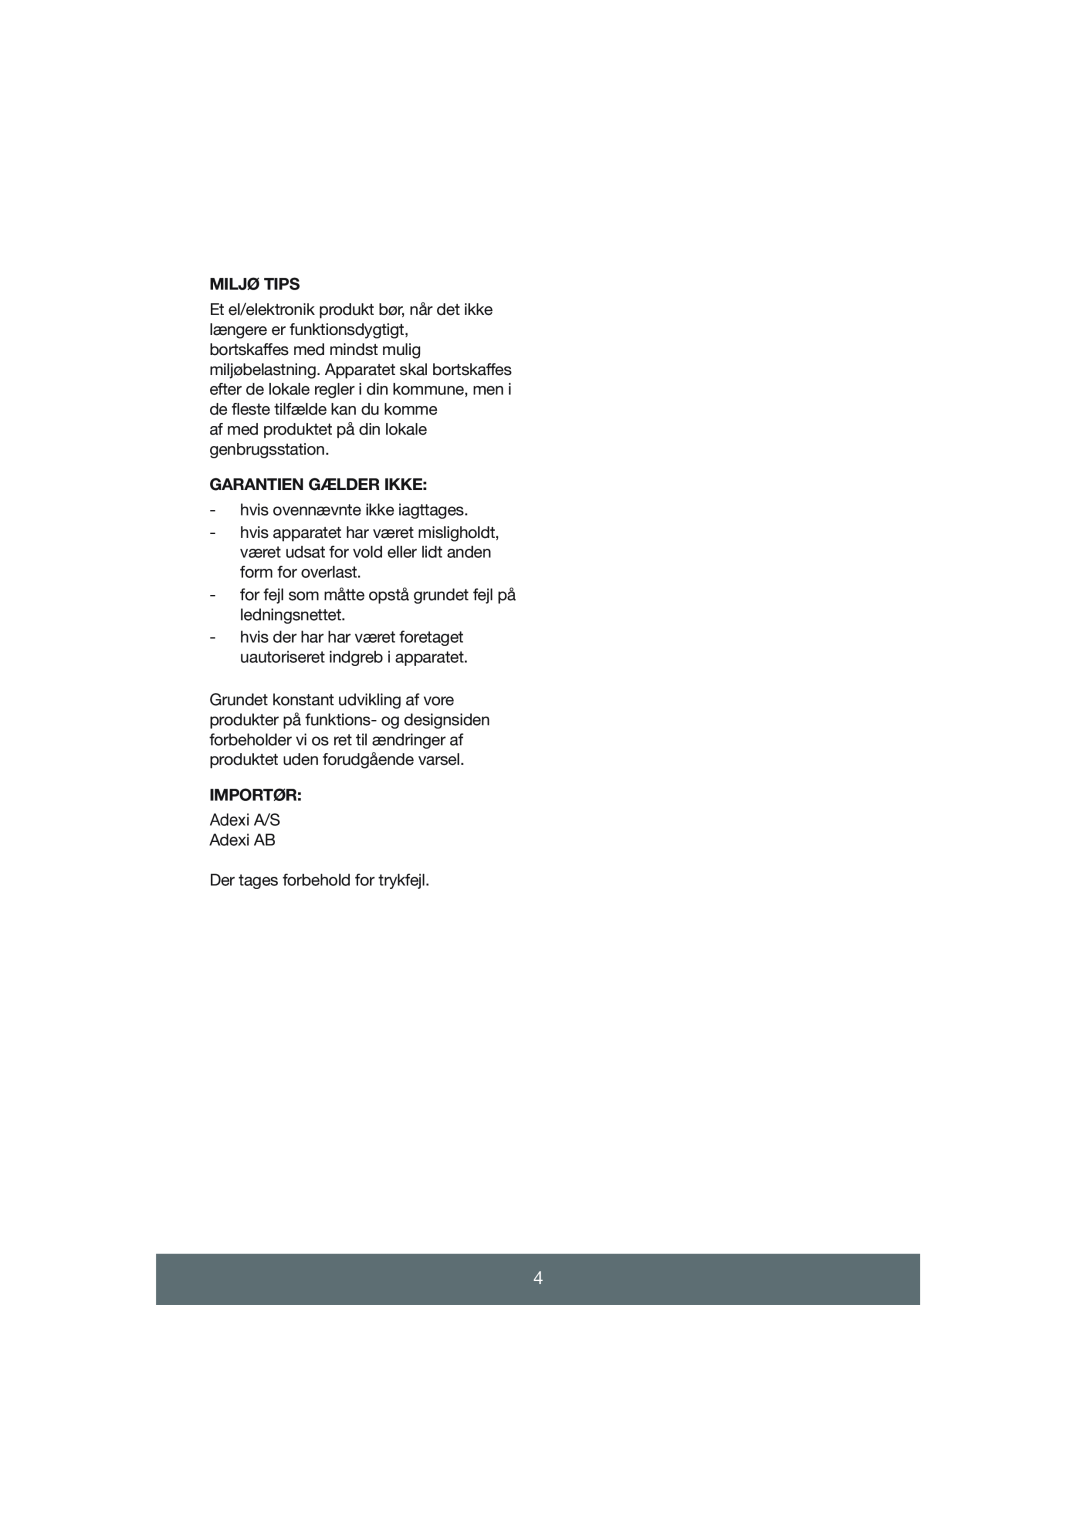 Melissa 645-055 manual Miljø Tips, Garantien Gælder Ikke, Importør 